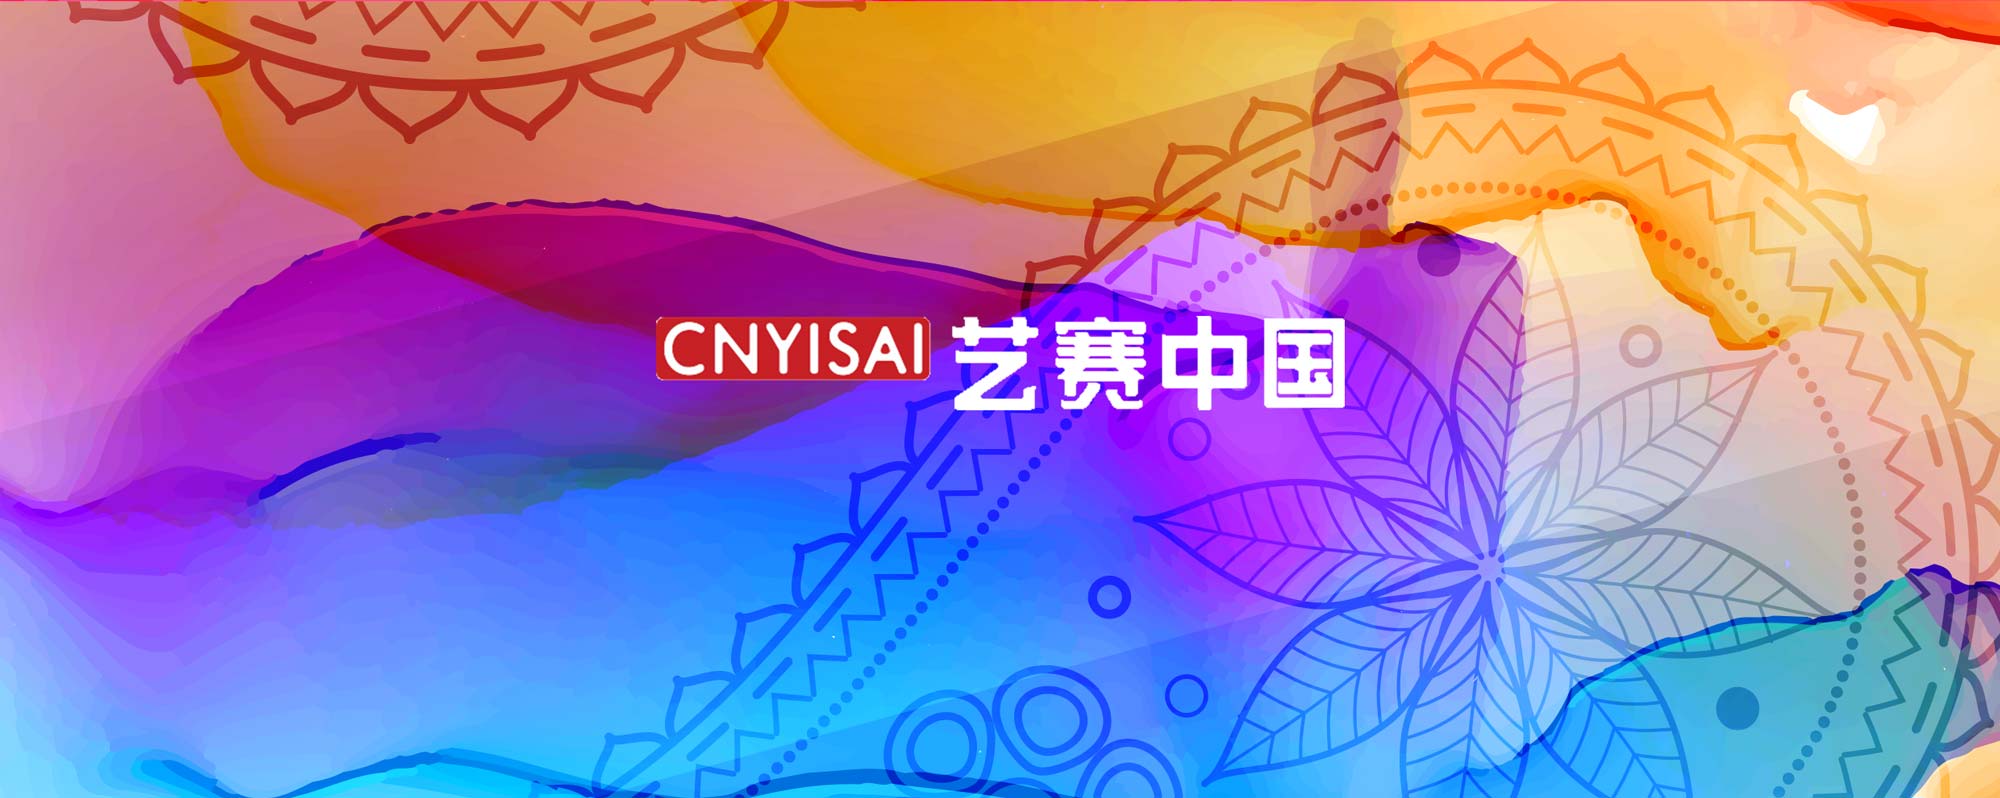 第三届台湾国际大学生年度艺术奖 获奖名单-CNYISAI艺赛